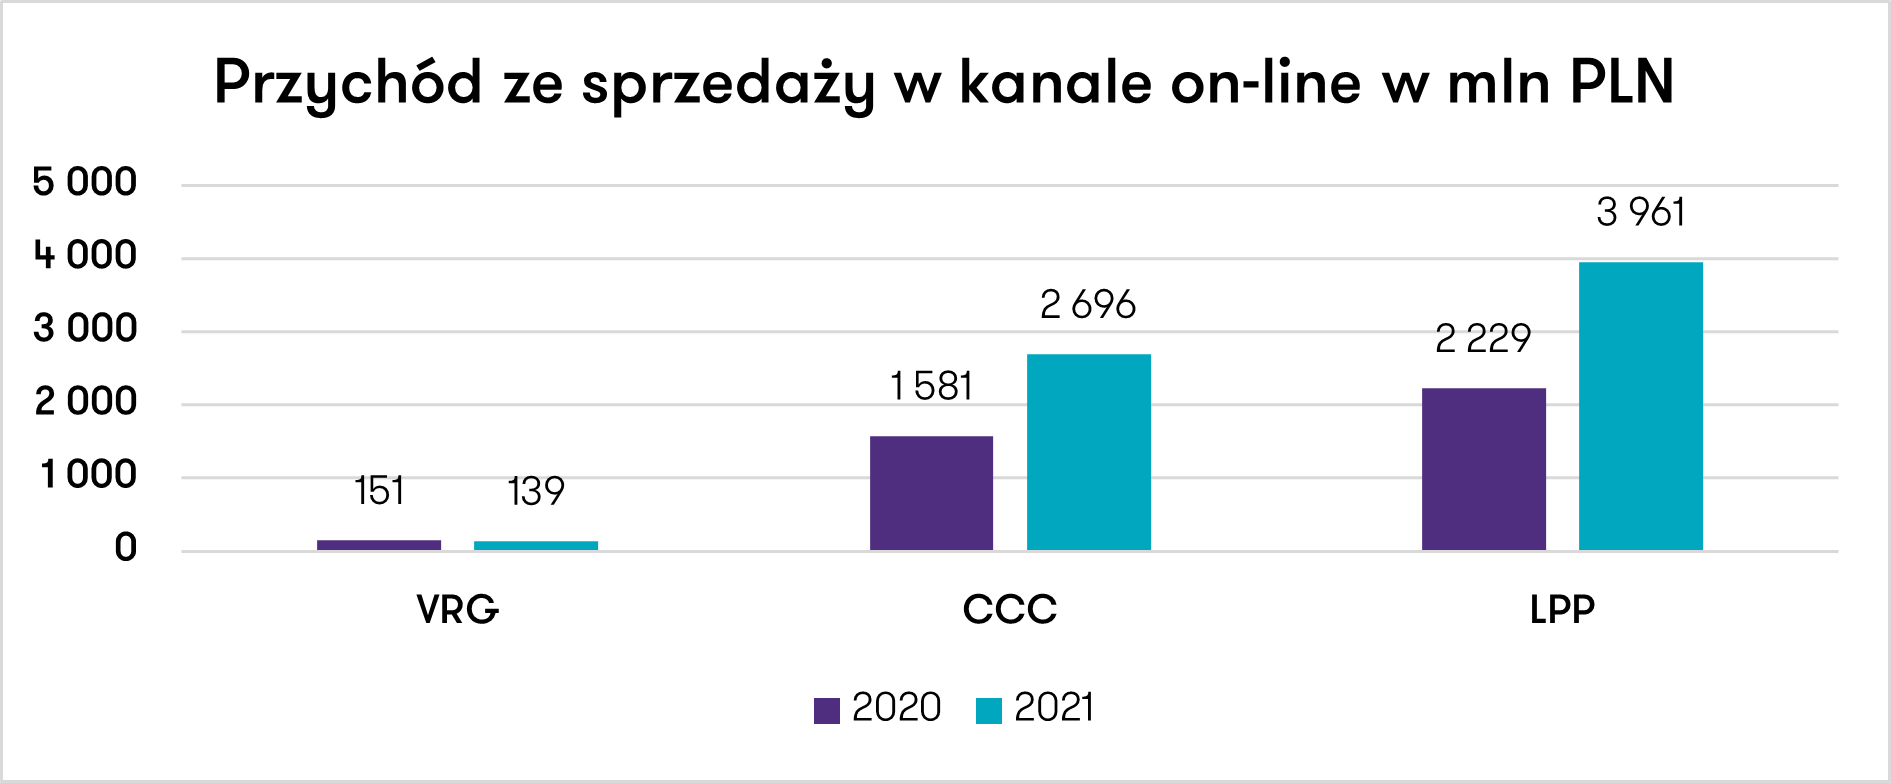 Przychody ze sprzedazy w kanale on-line w mln pln